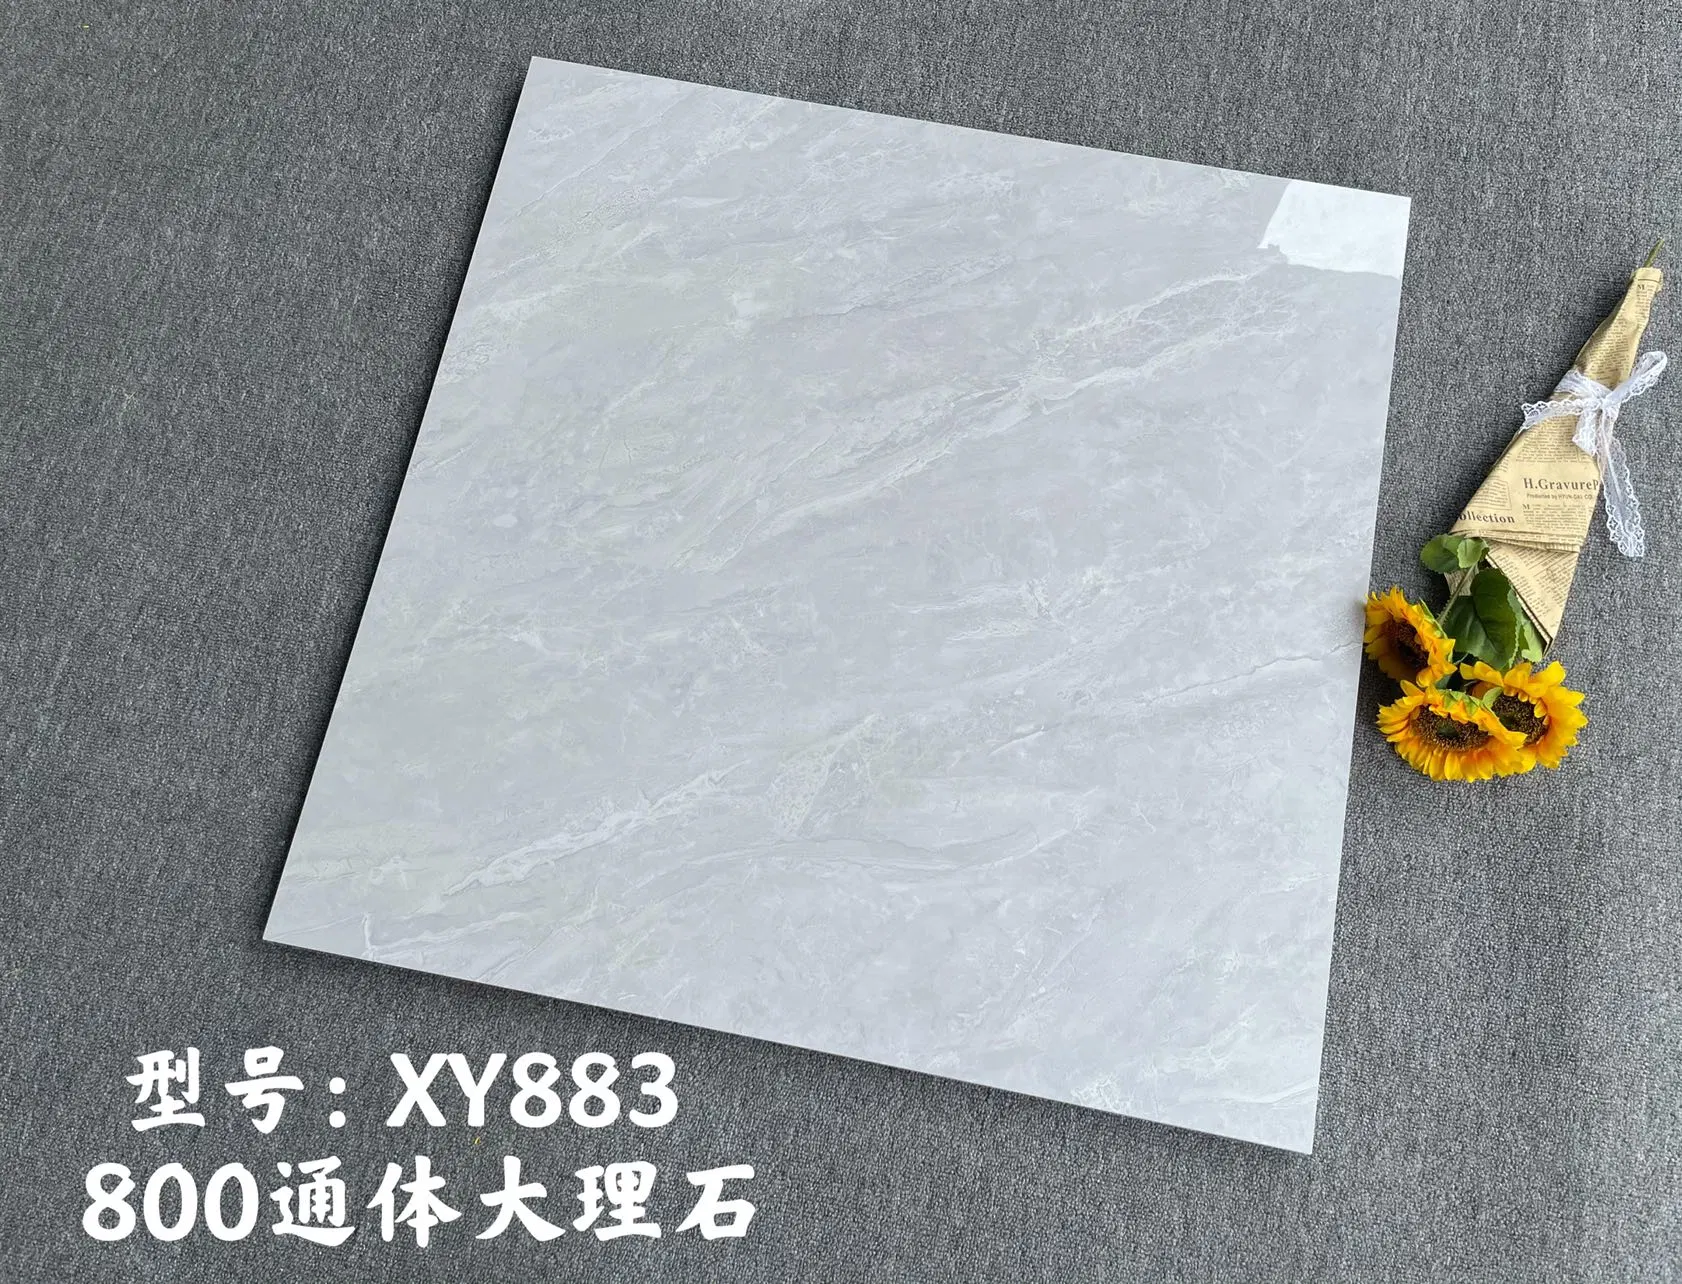 China Guangdong Keramik Marmor Bodenfliesen Wohnzimmer Modern Grey Bodenfliesen 800 * 800 Schlafzimmer Ziegel Marmor Fliesen Non-Rutsch Marmor